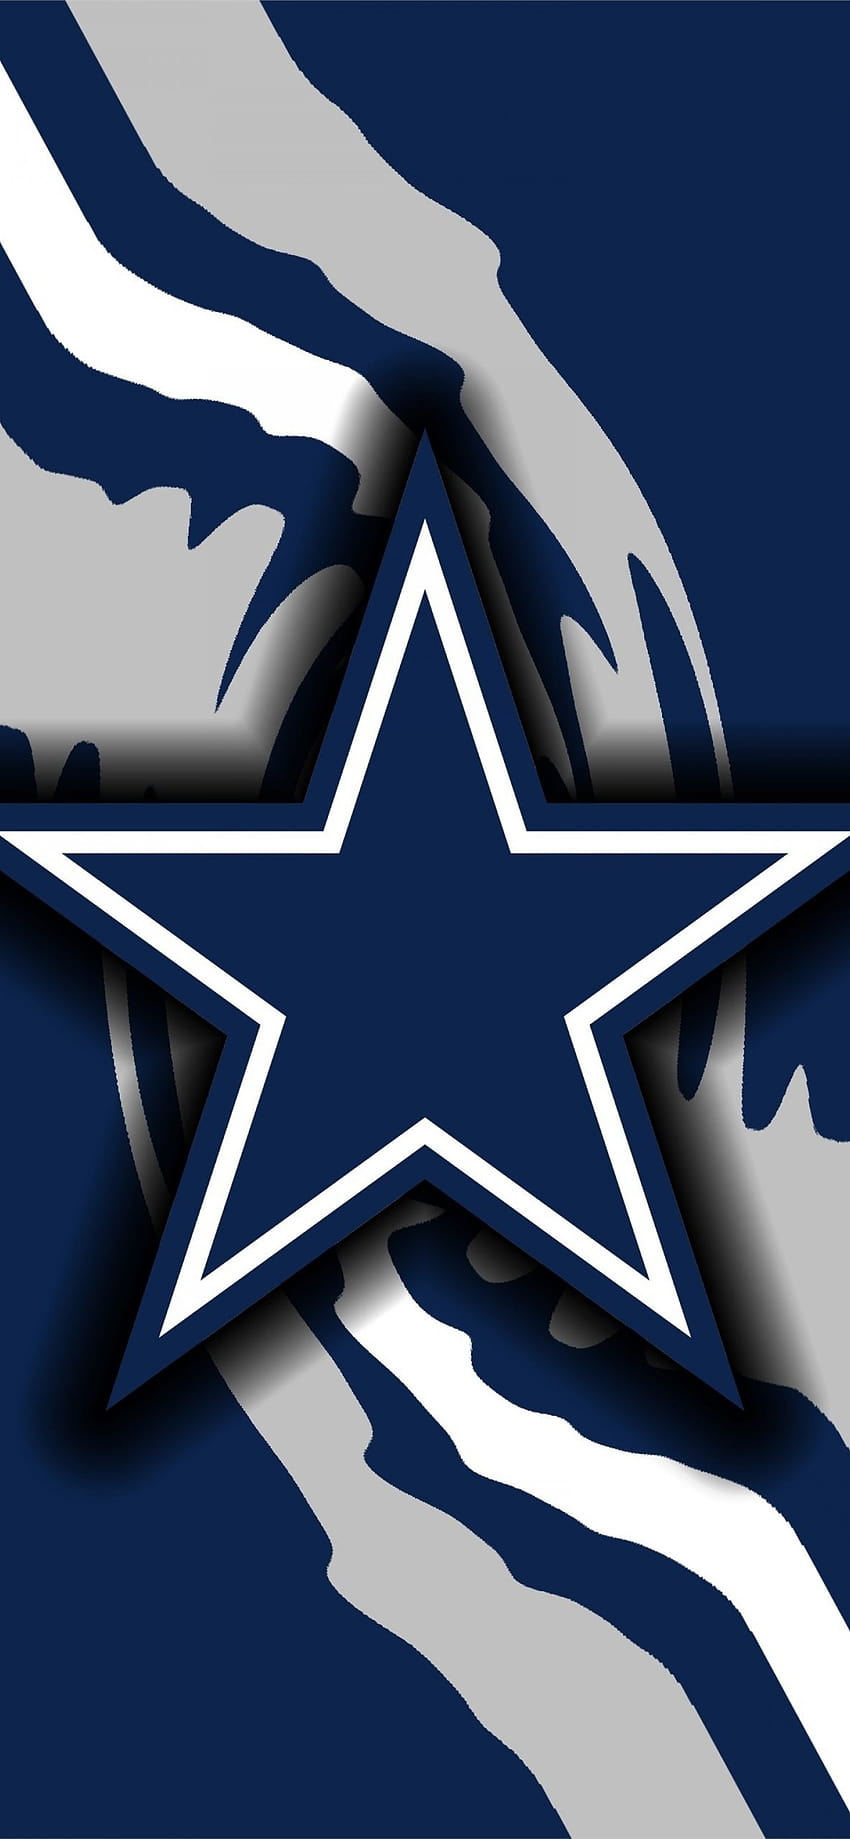 Dallas Cowboys Cheerleaders  Artists Renditions  Weekly Dallas Cowboys  Cheerleaders Blog